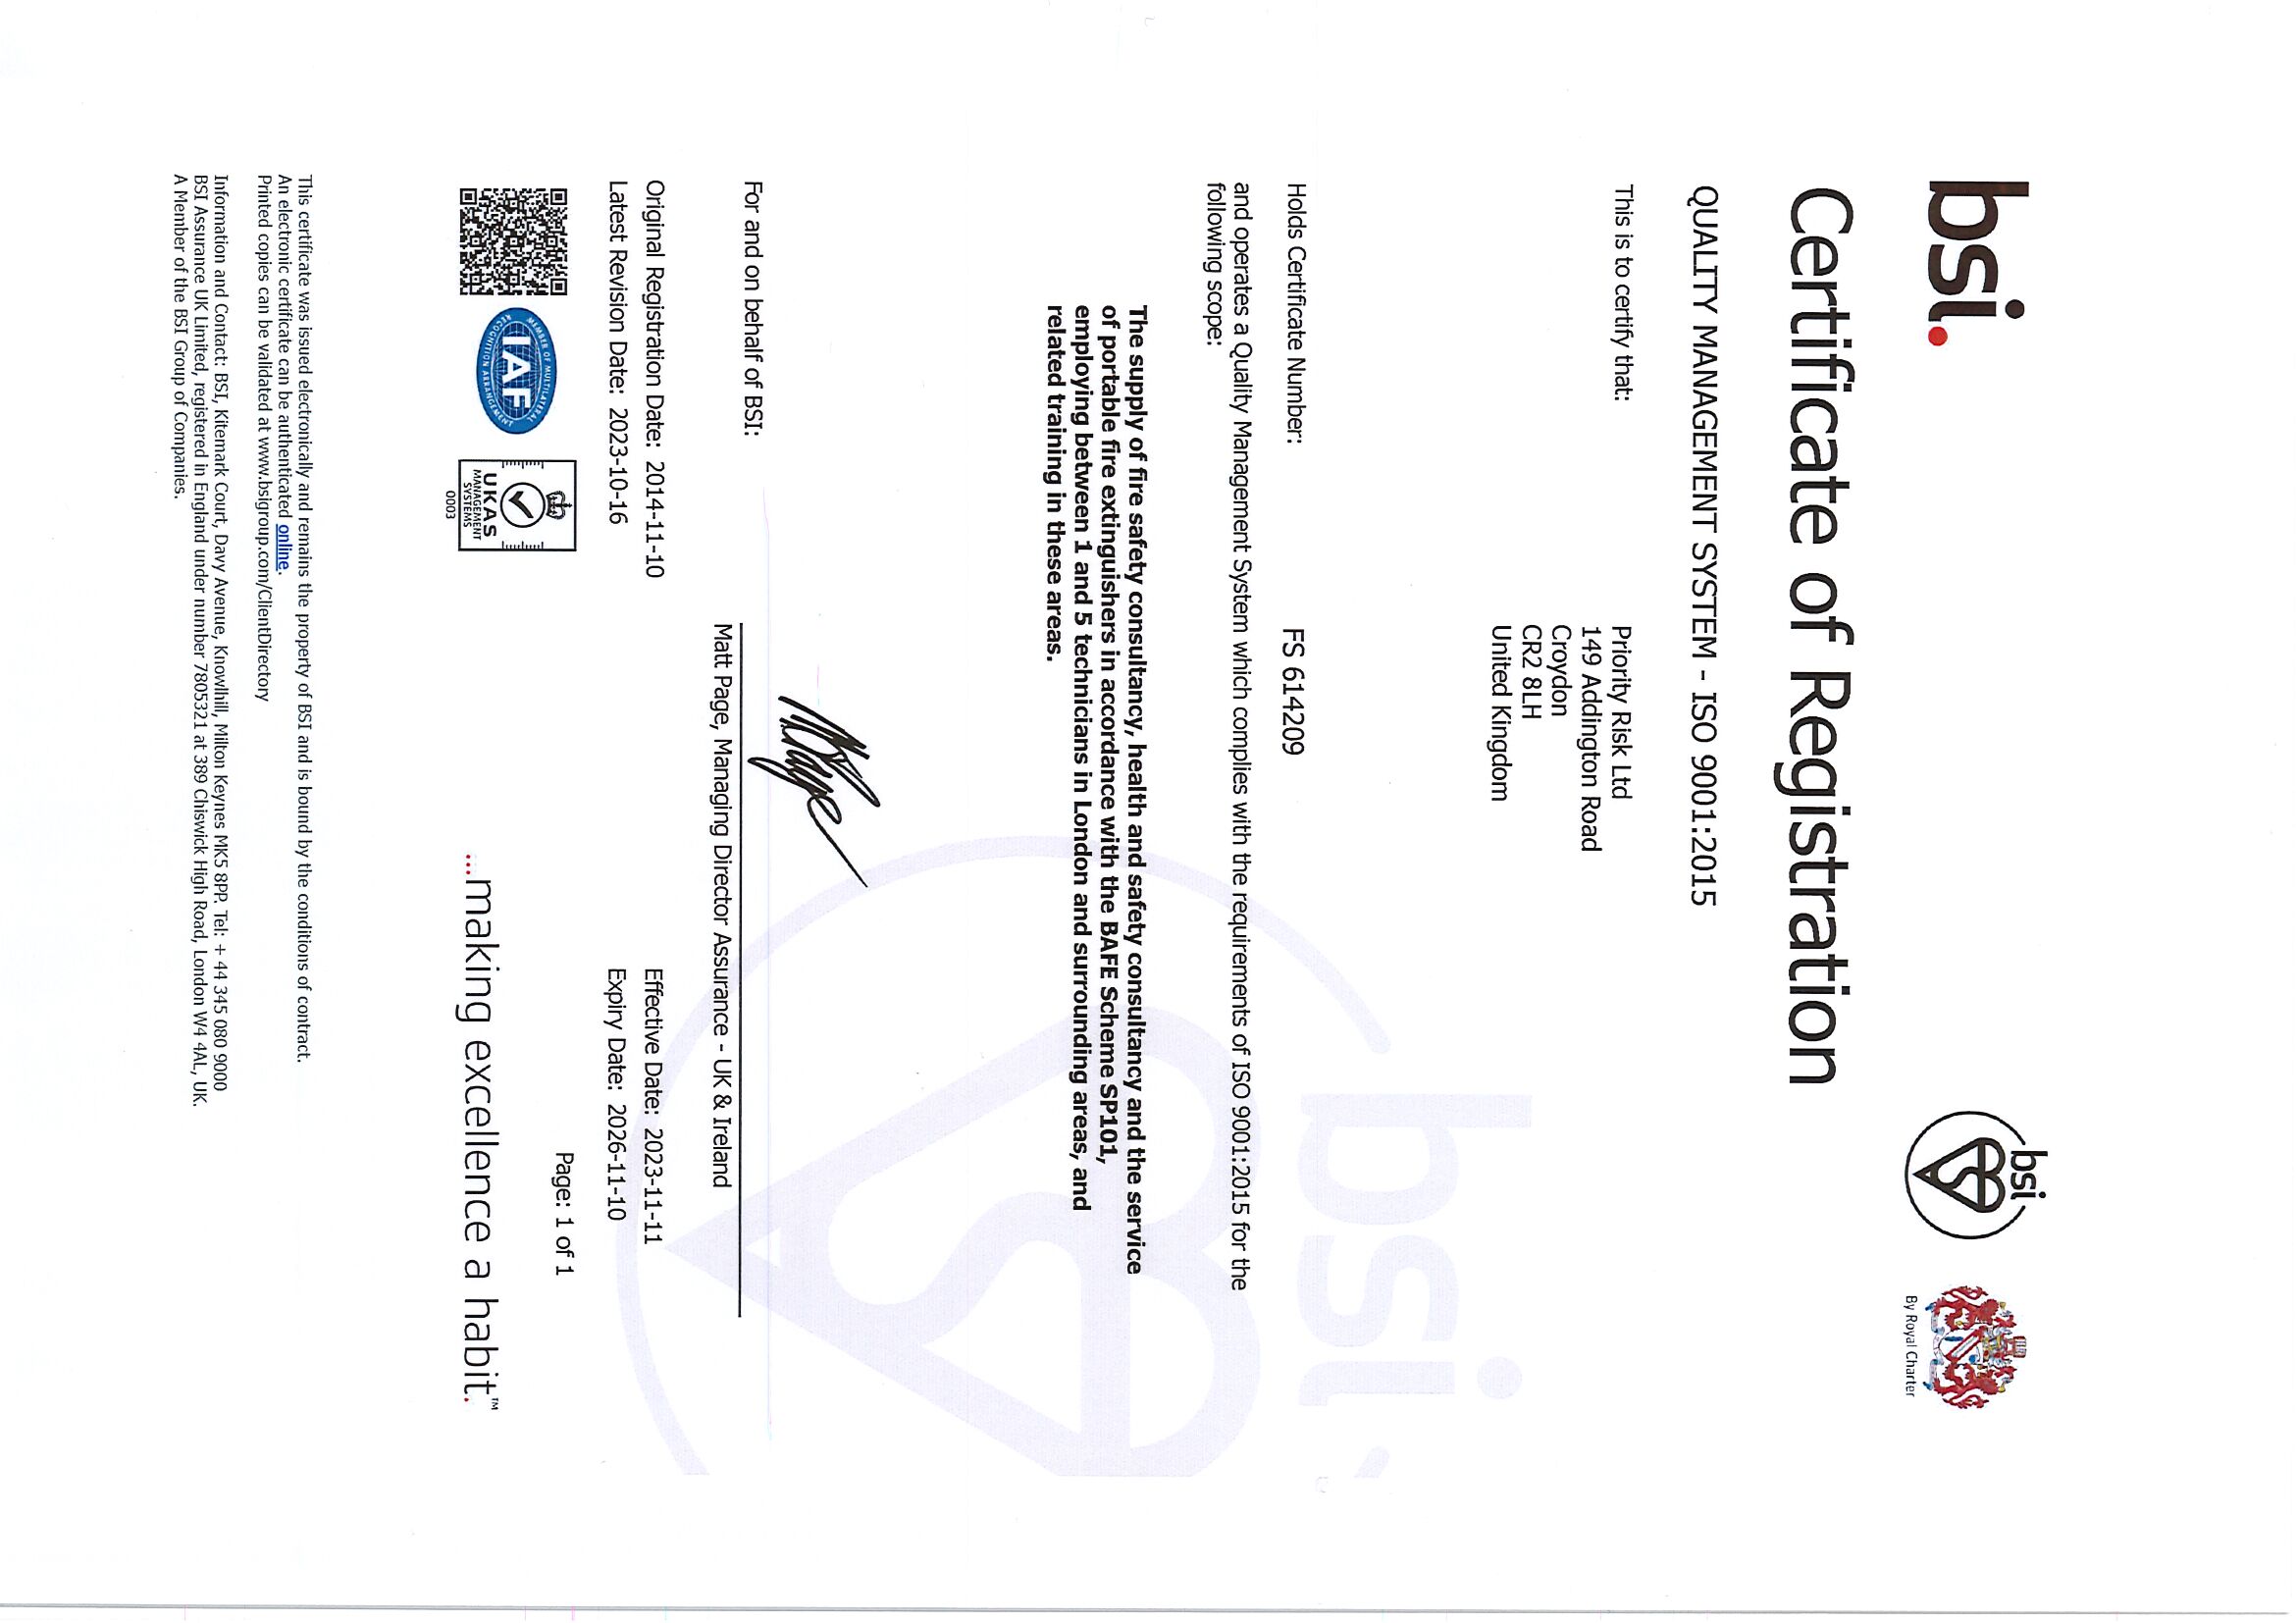 BSI Certificate of Membership